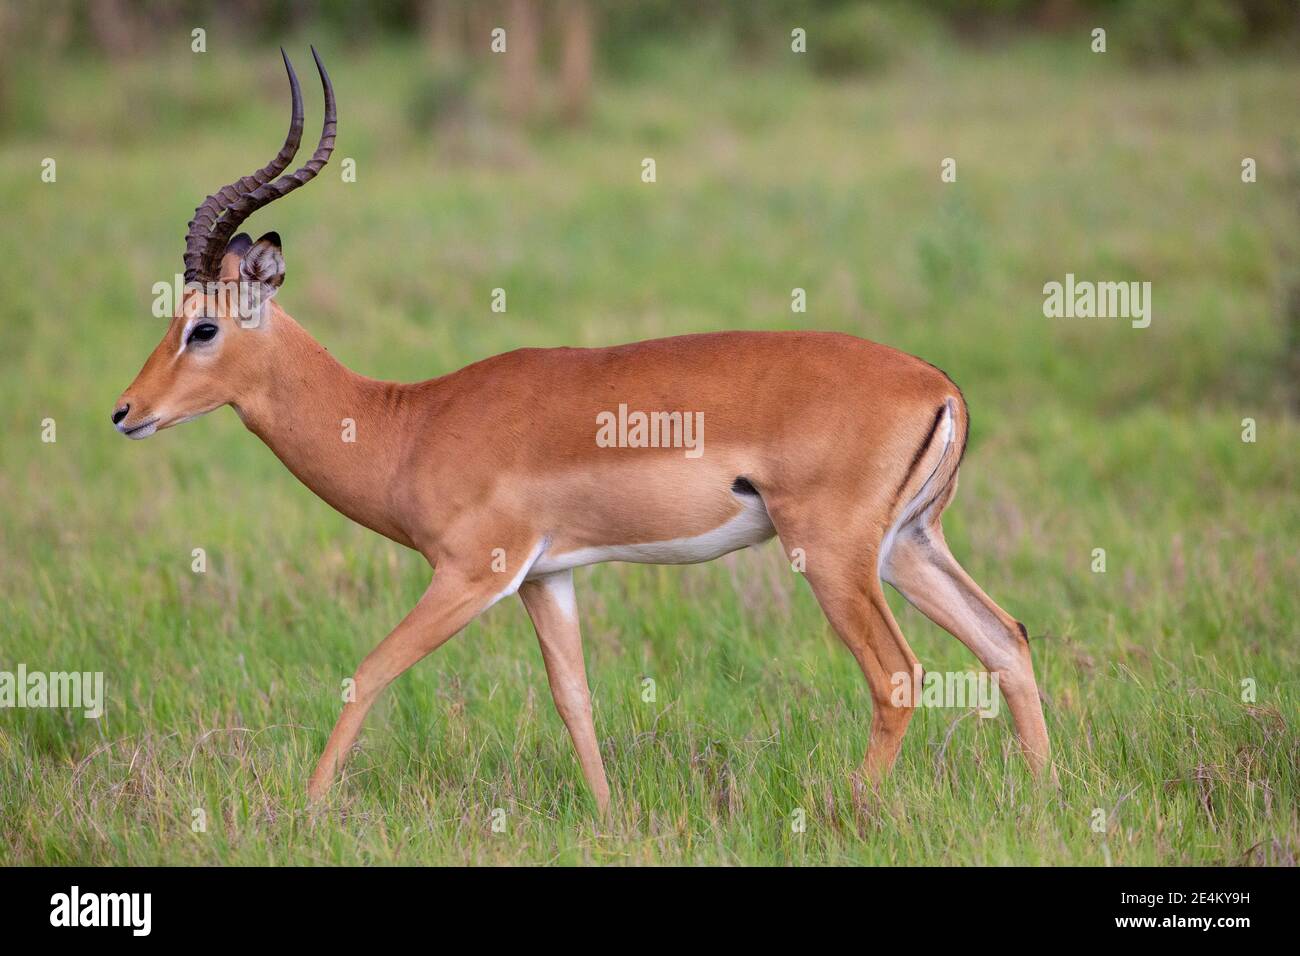 Impala (Aepyceros melampus). Uomo nel profilo, a piedi. Laterale, marcature colorate laterali, linea di demarkazione orizzontale, più scuro sopra, più chiaro sotto.Botswana. Foto Stock